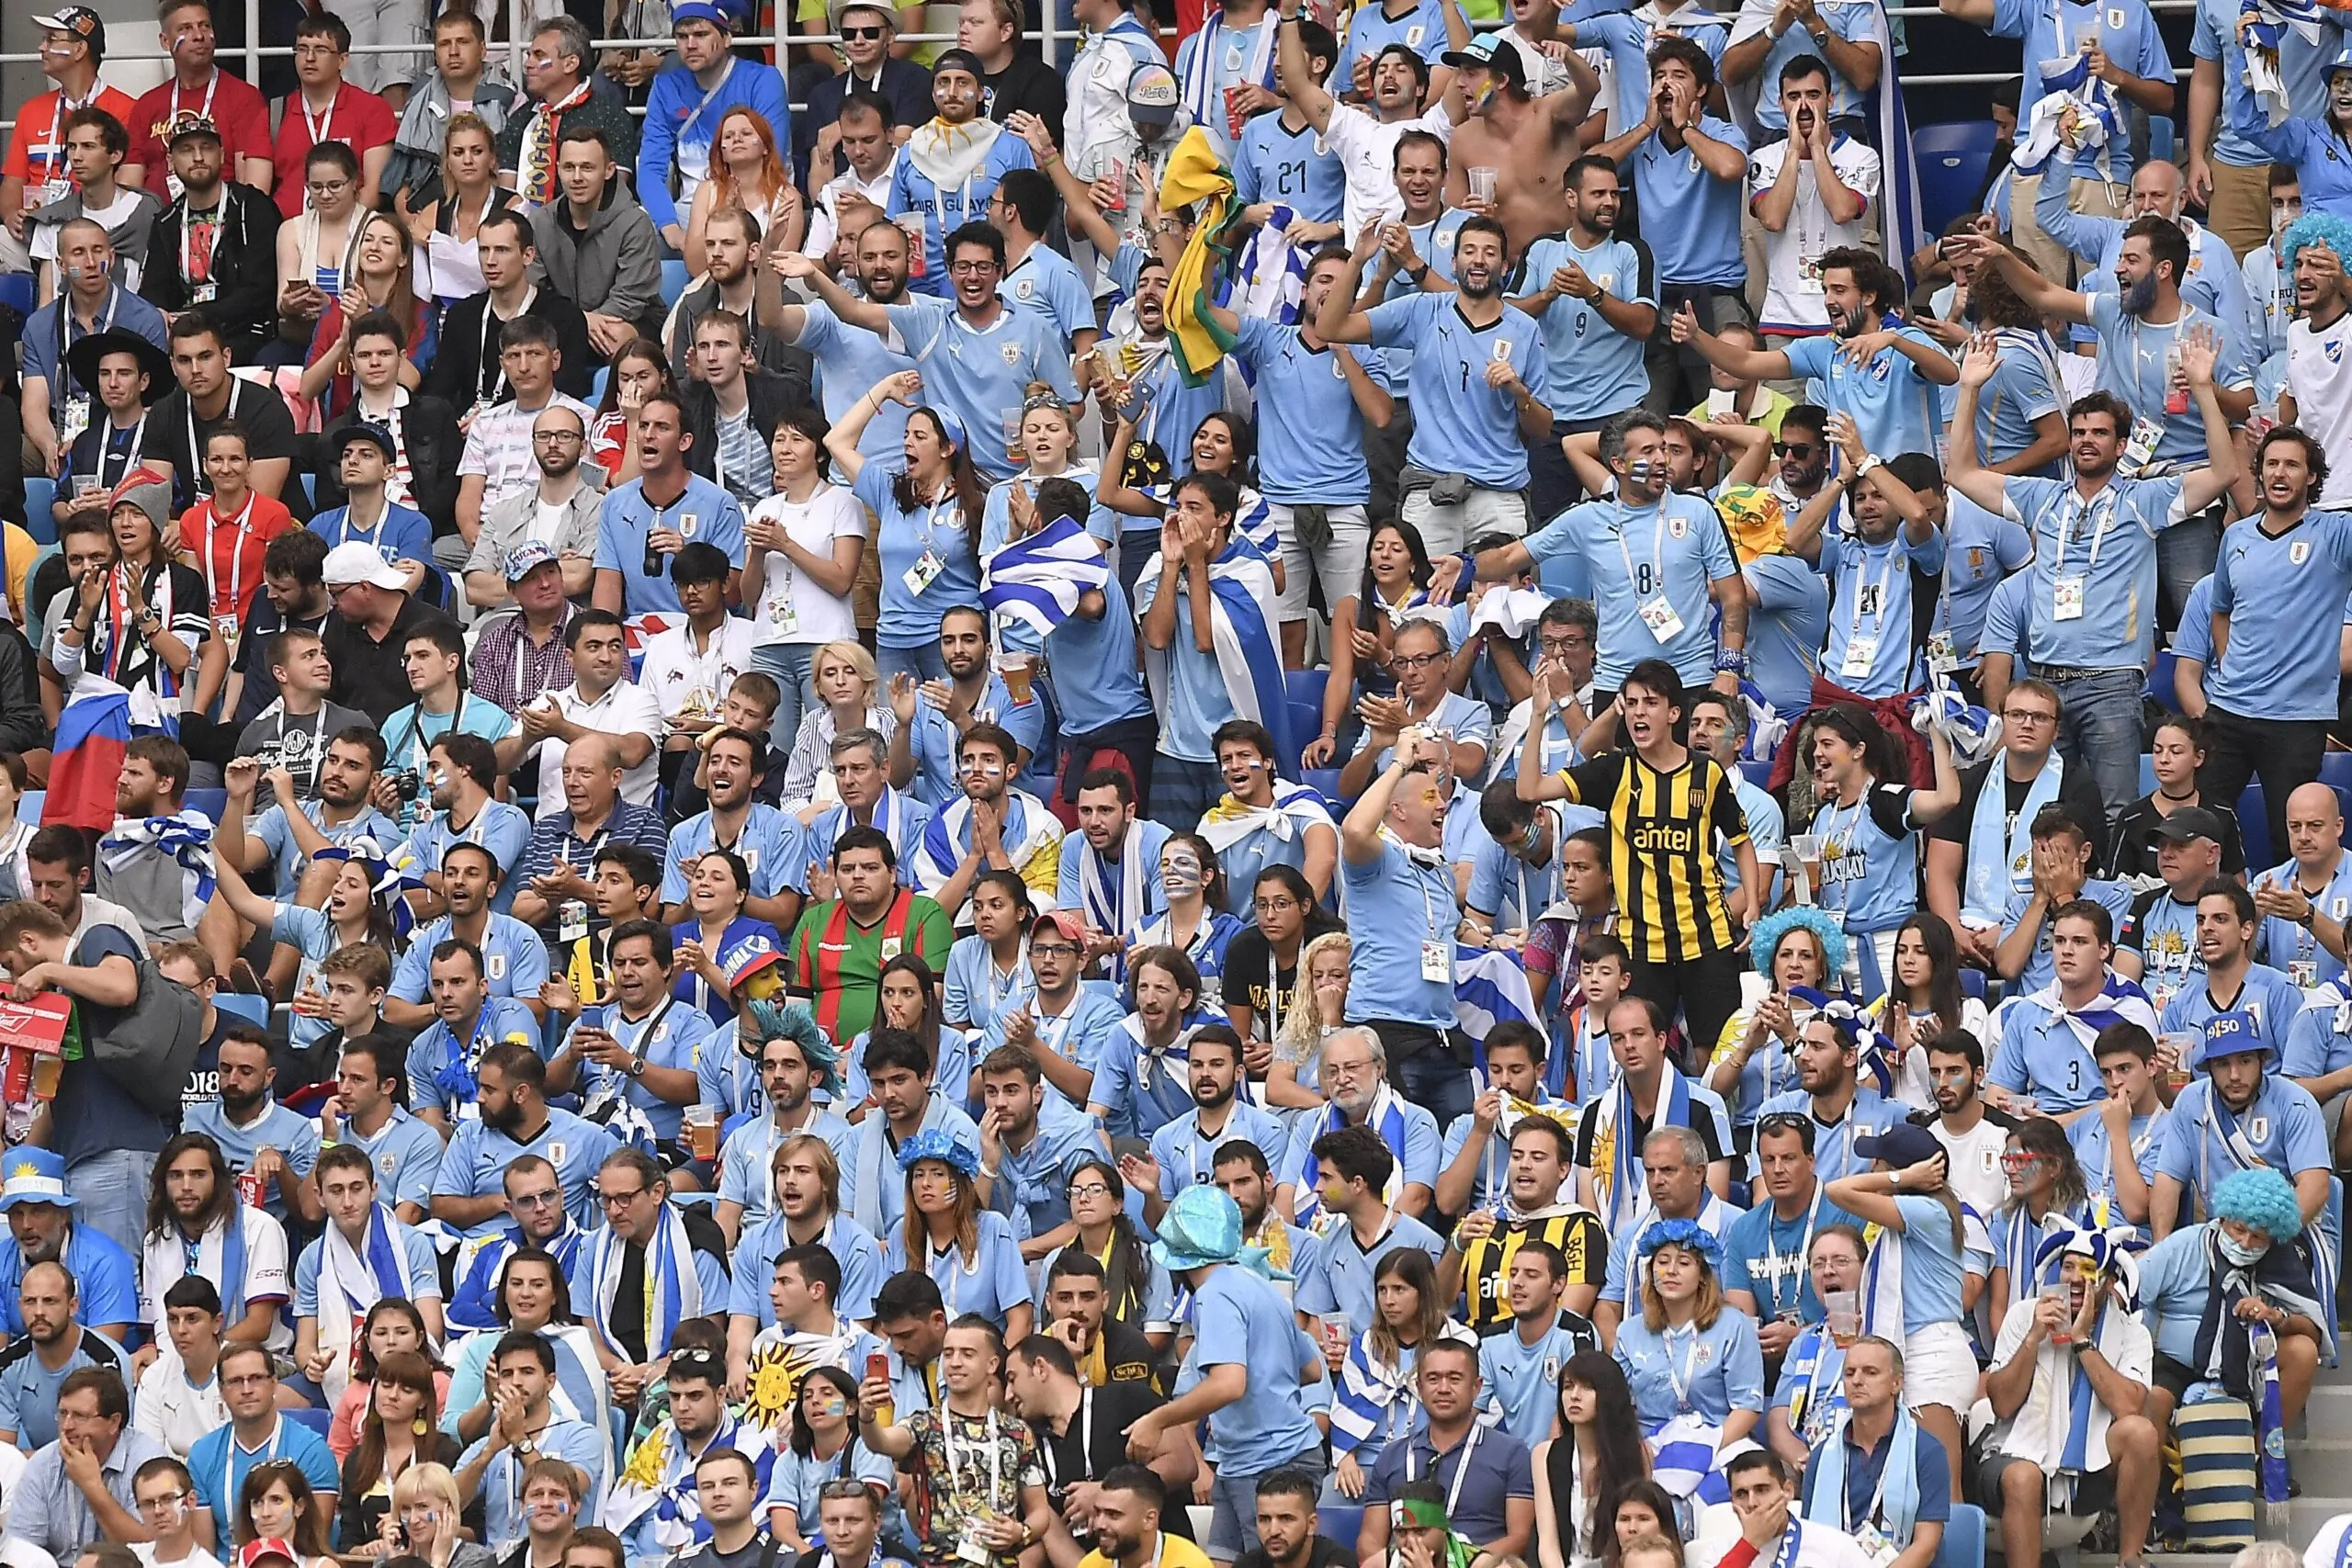 Tragica morte per suicidio: l’Uruguay sospende il campionato